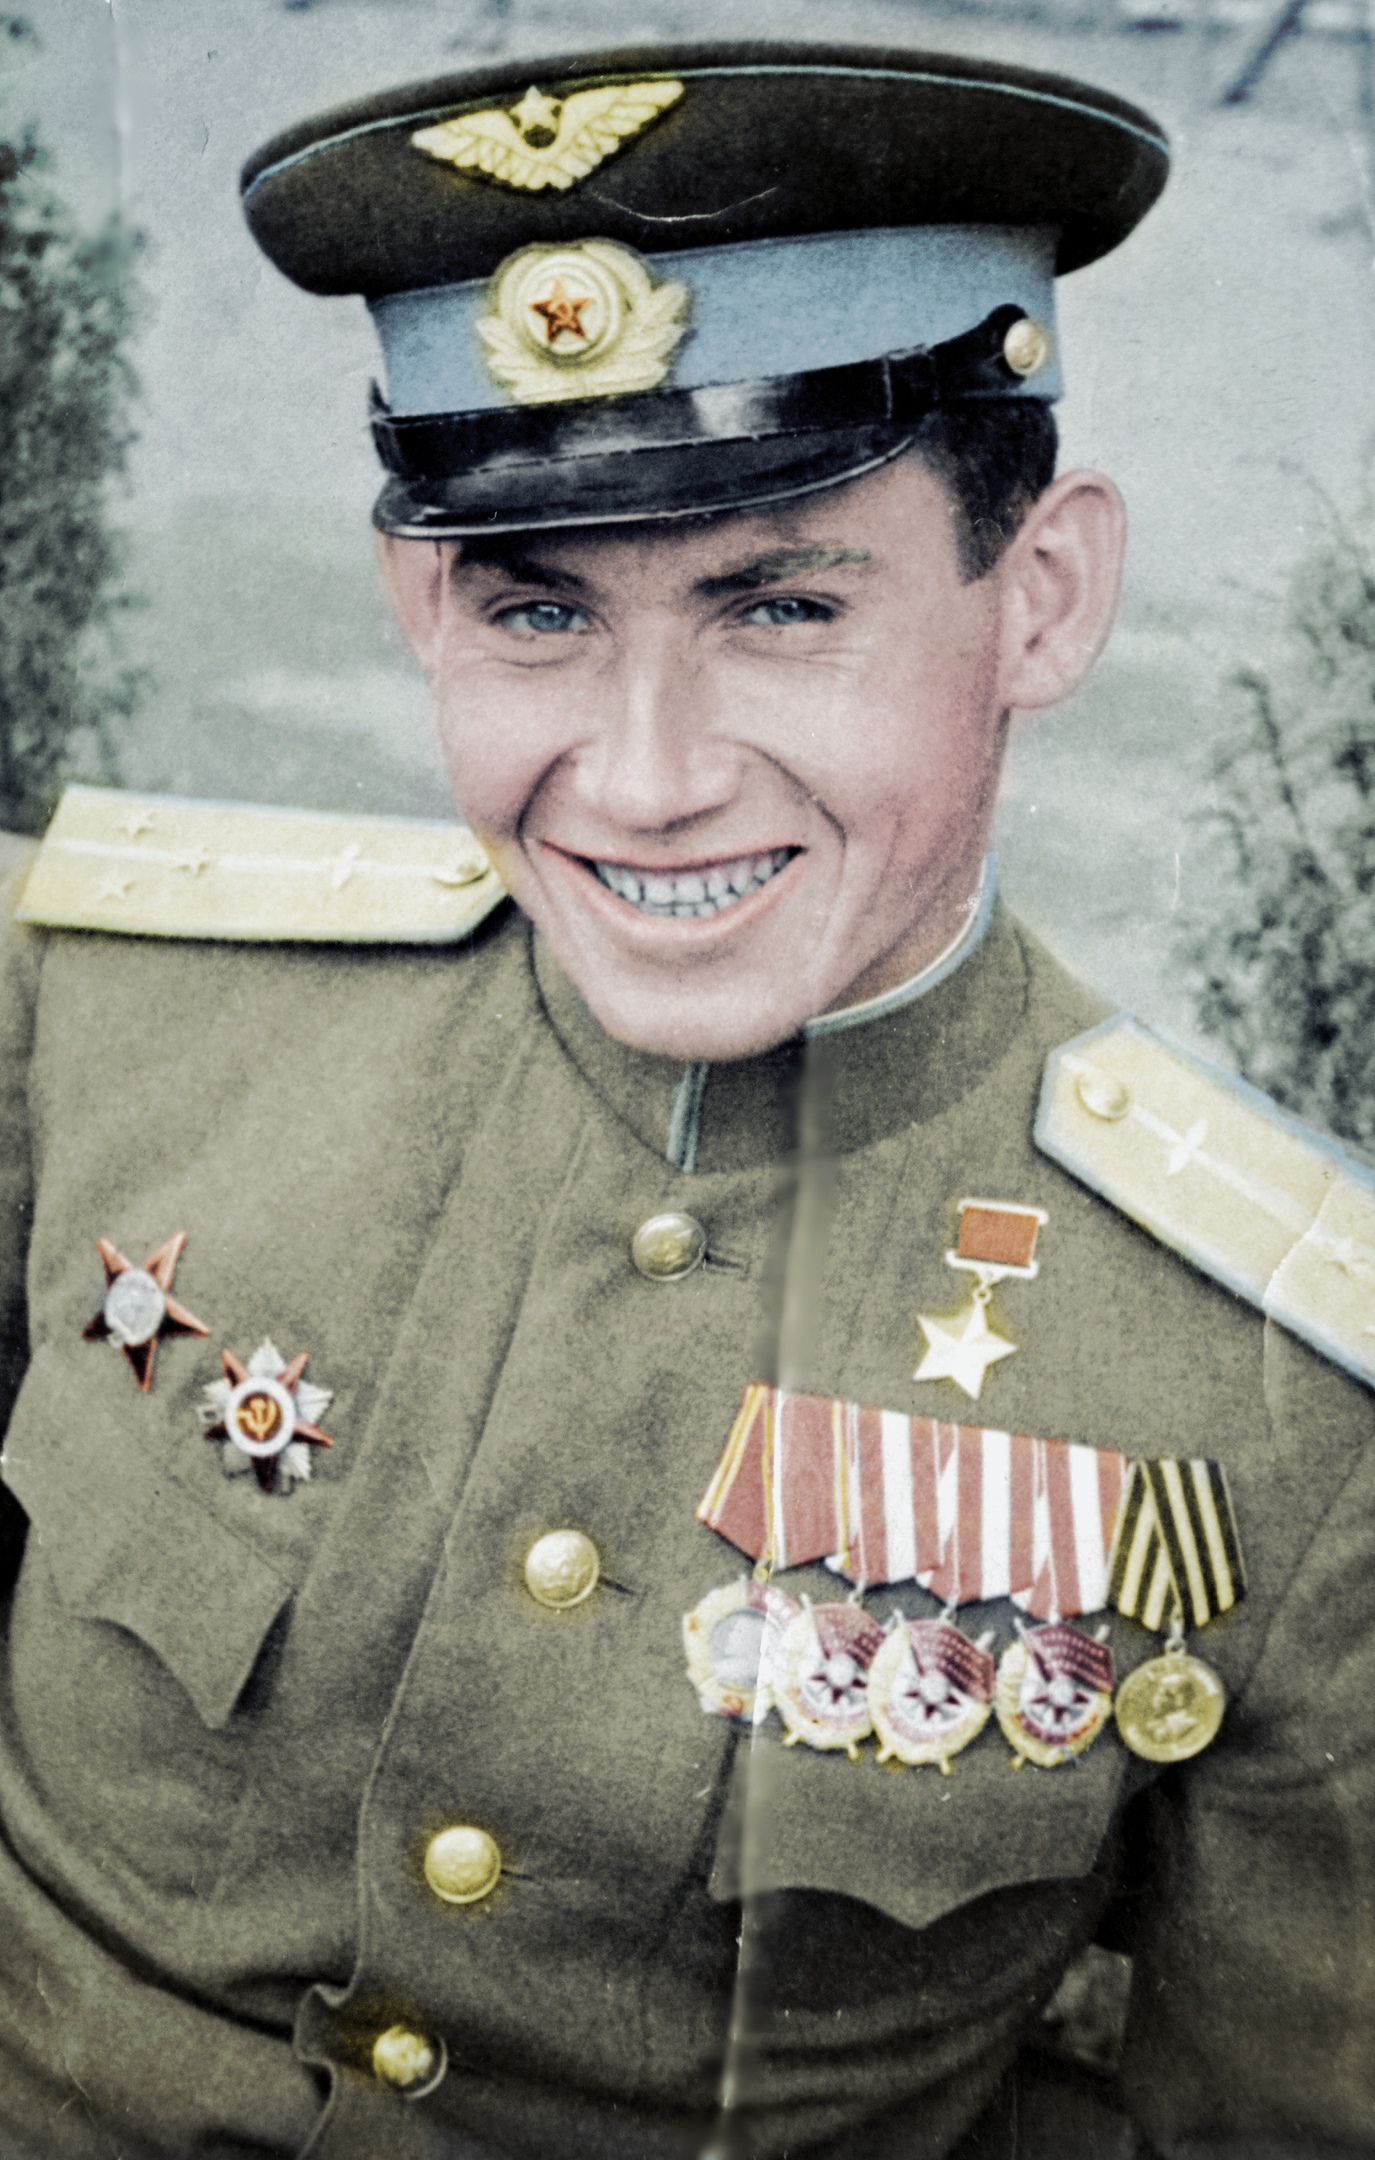 Картинки герои советского союза